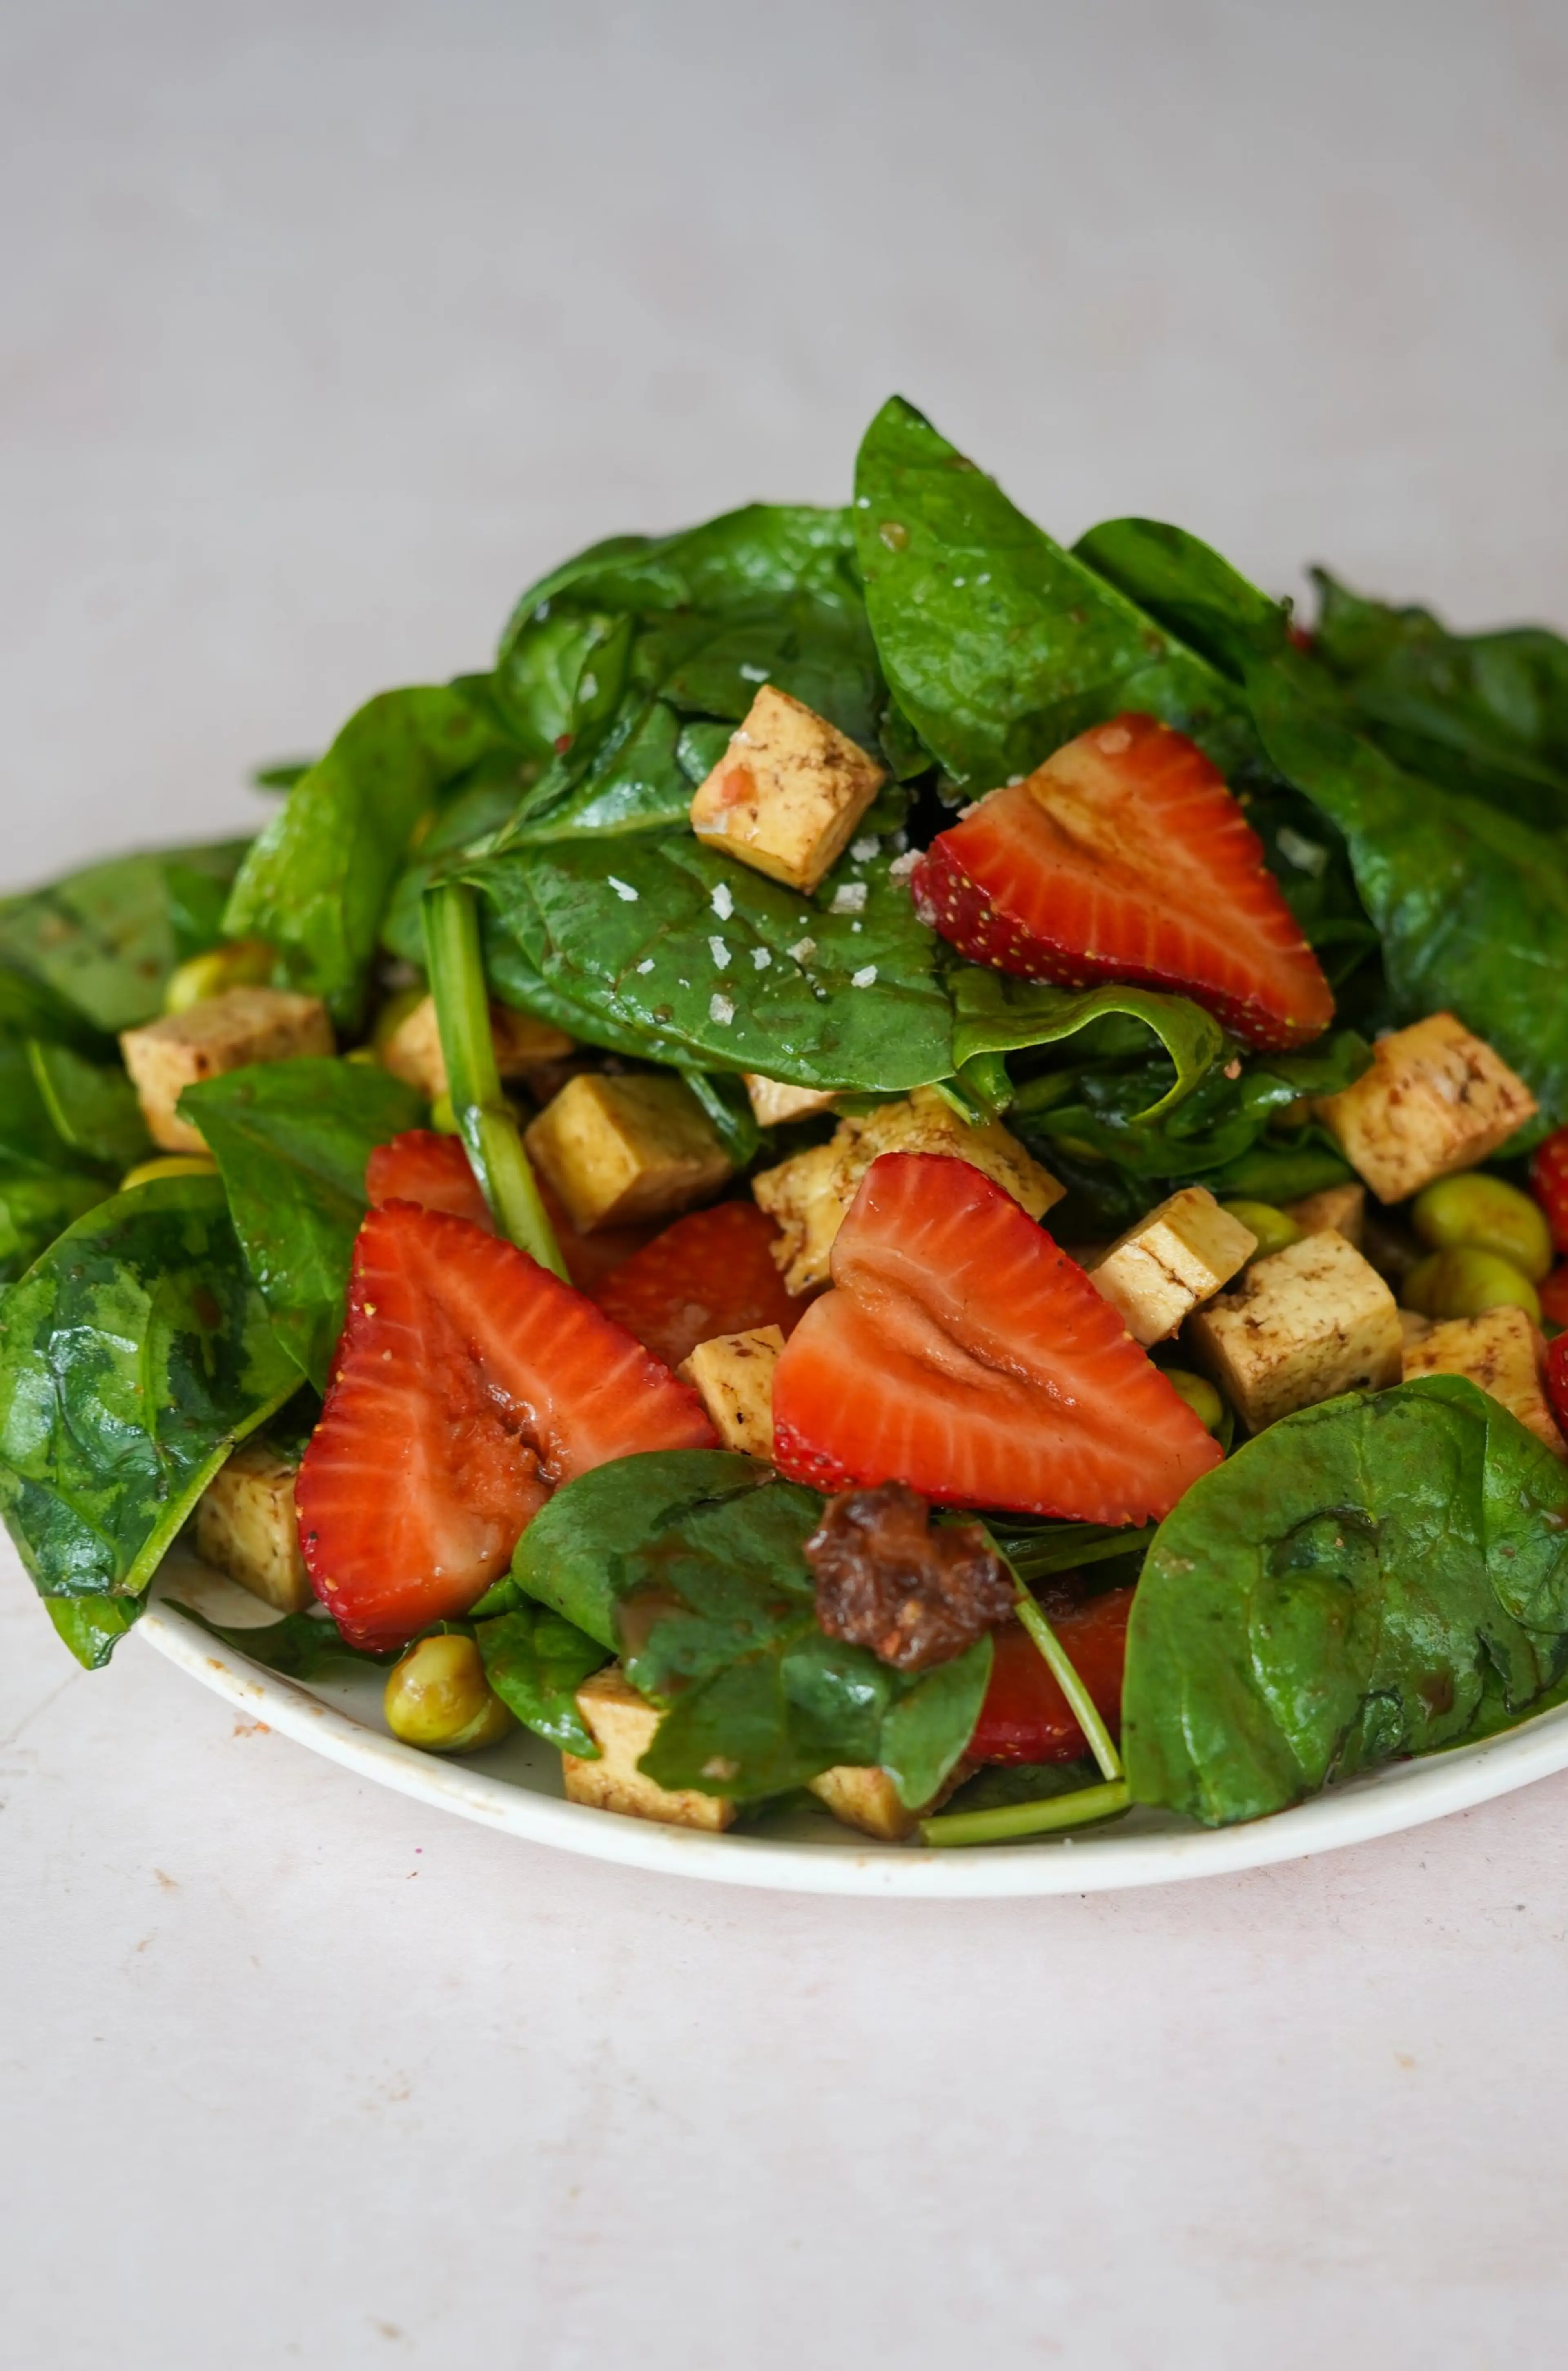 Ariana Grande's Vegan Salad Recipe